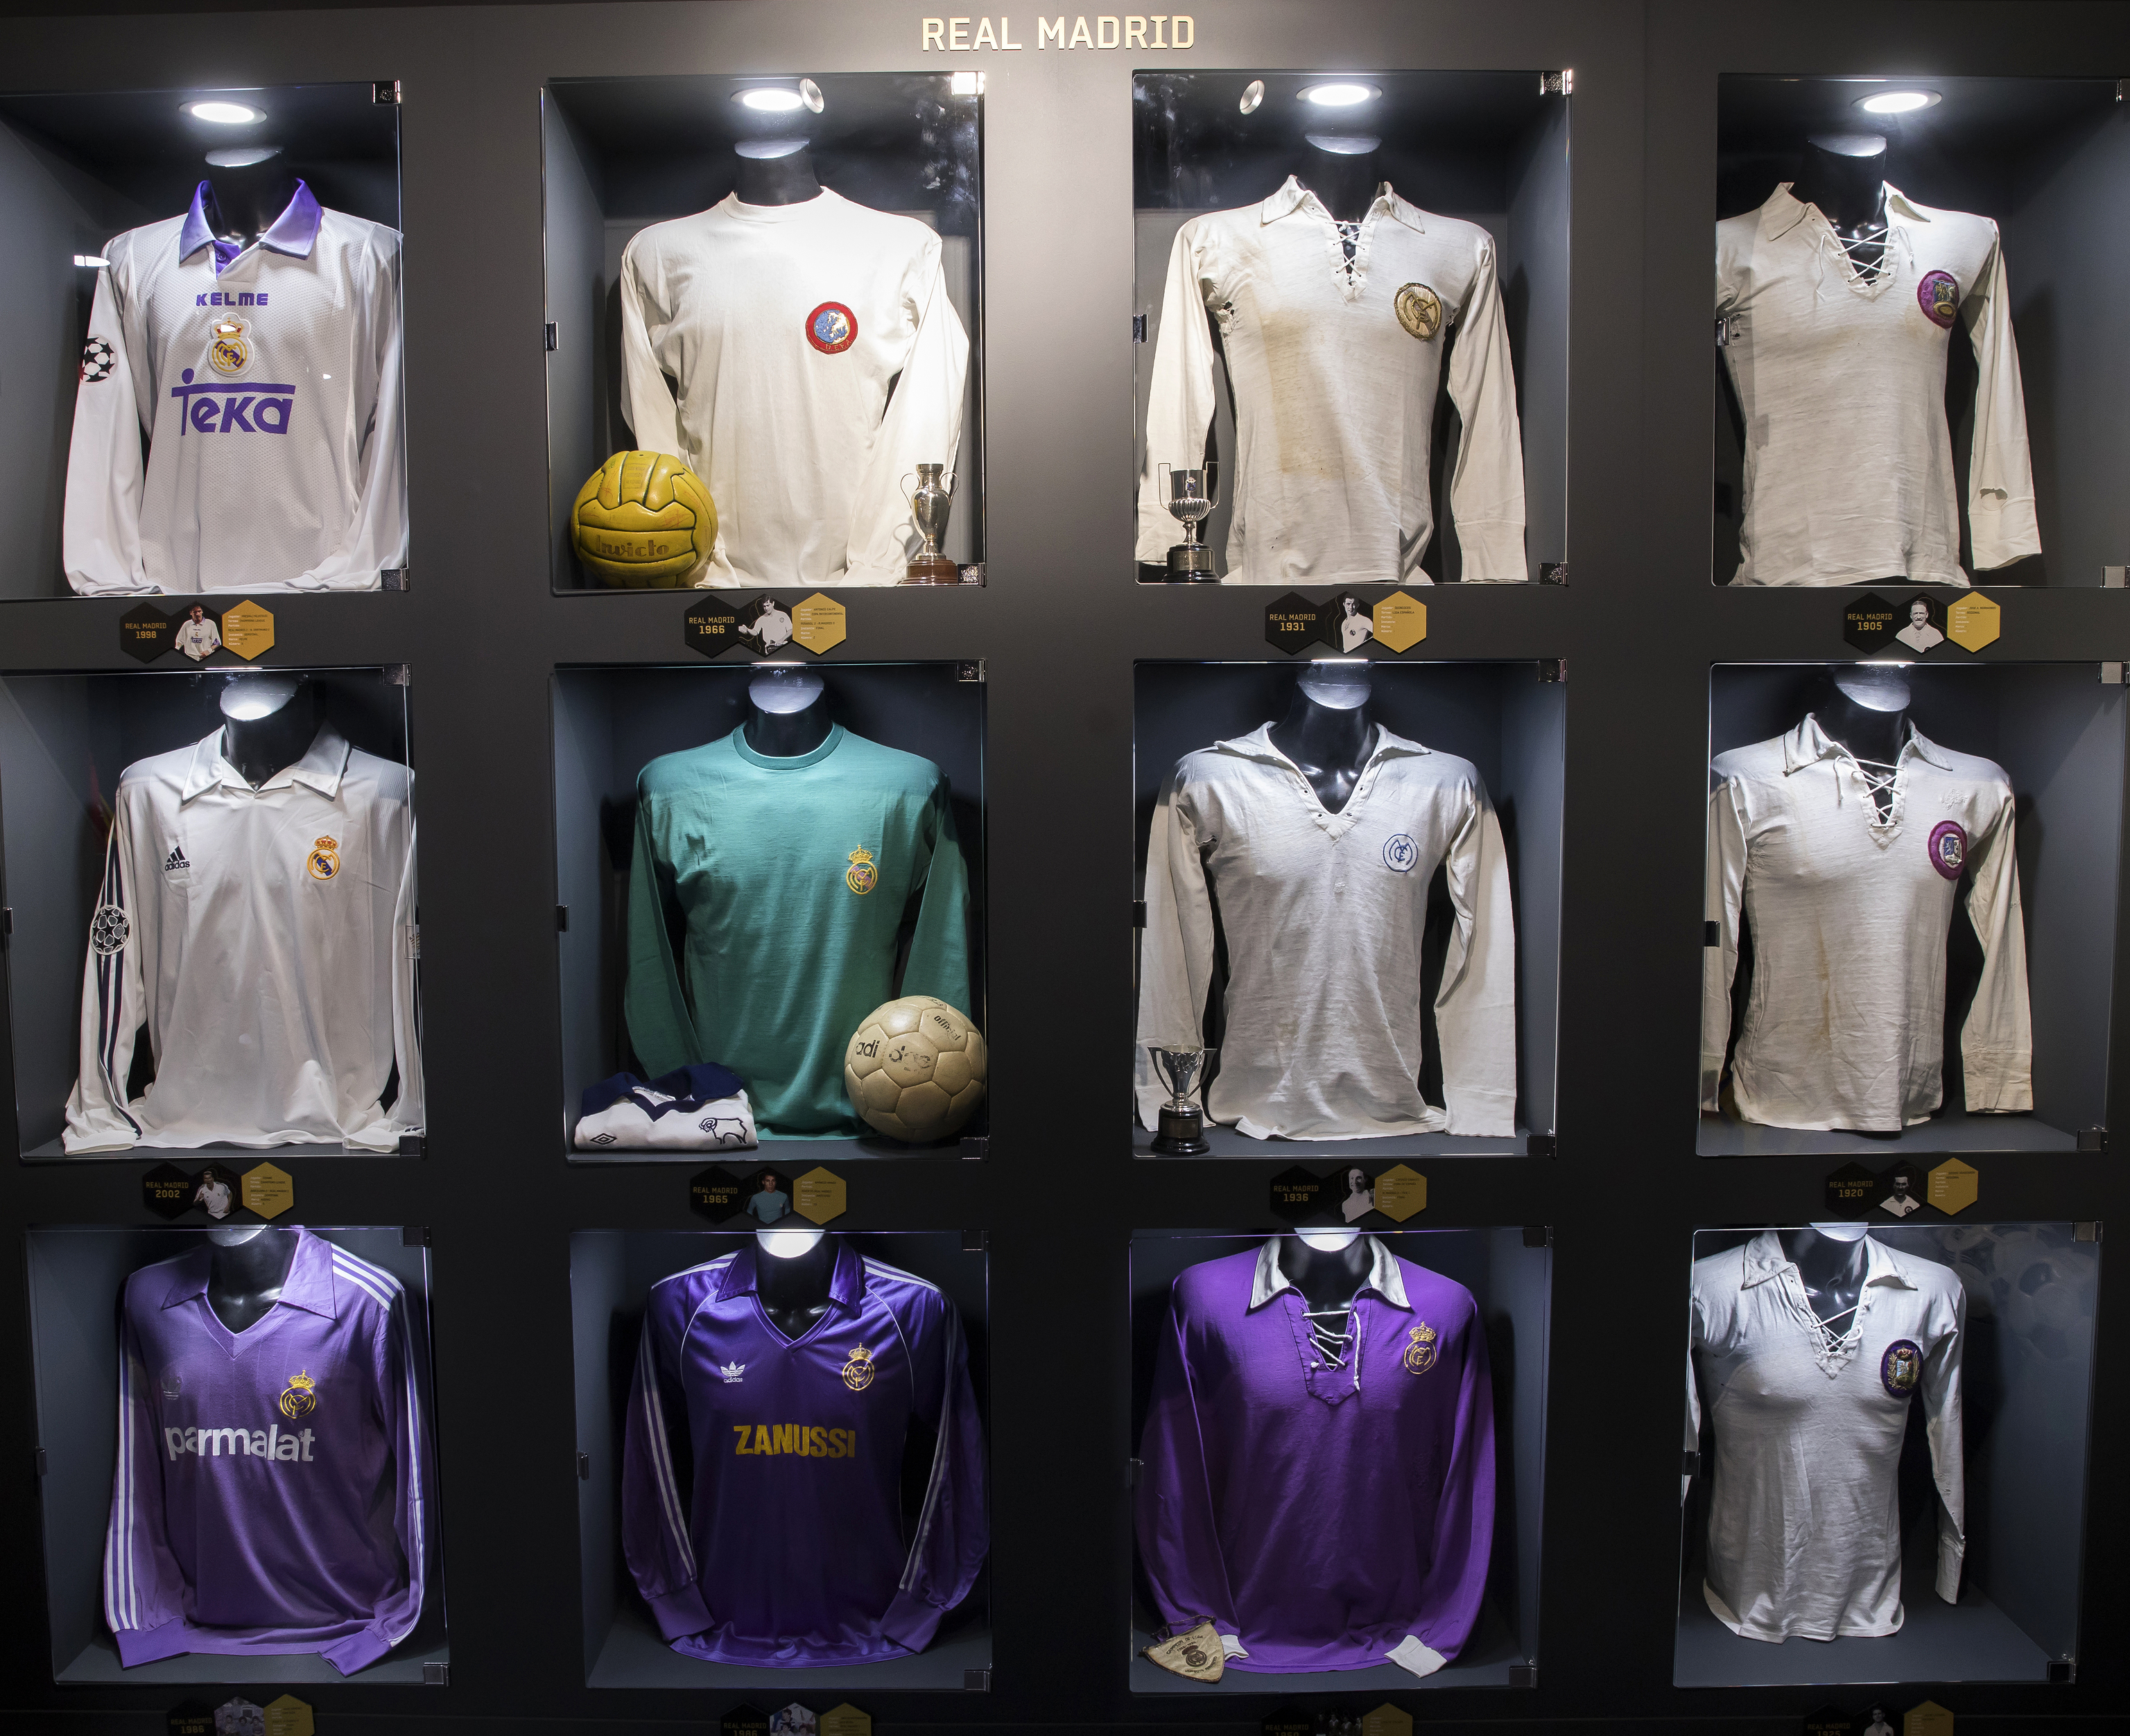 Camisetas representativas de la historia del Madrid exhibidas en Legends.